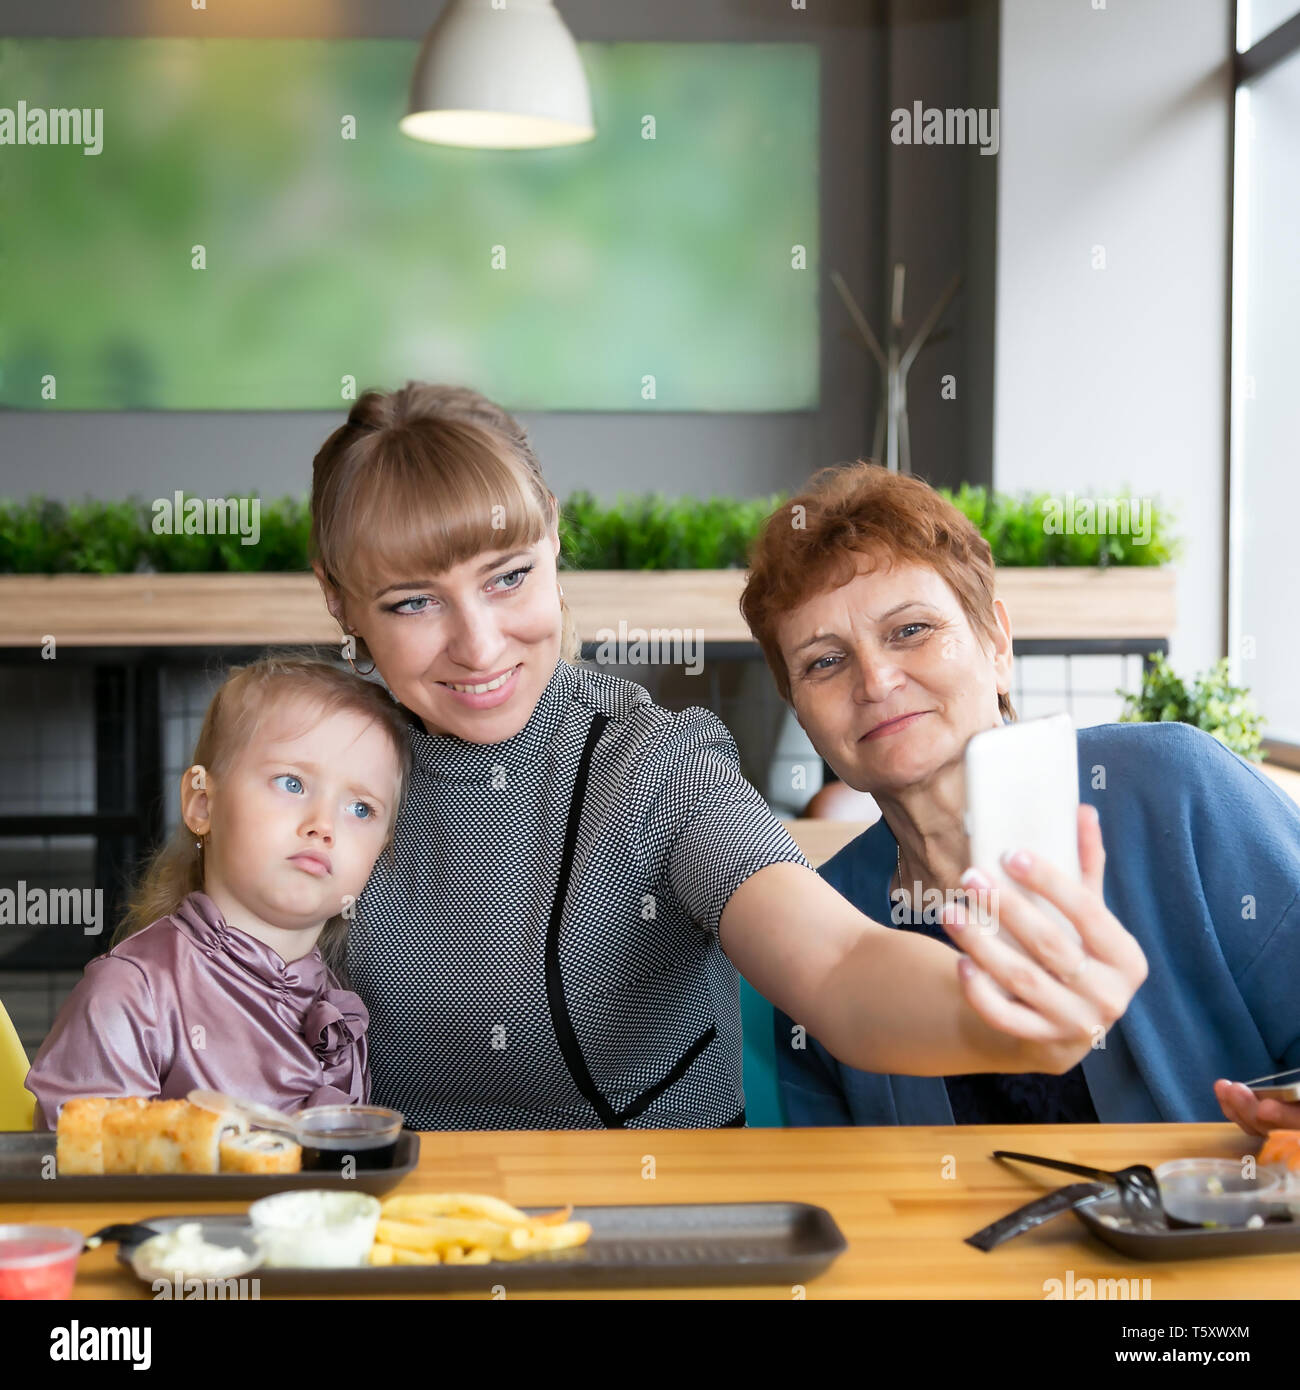 Eine junge Frau nimmt ein Bild von sich selbst auf einem Smartphone mit einem älteren Mutter und Tochter Stockfoto